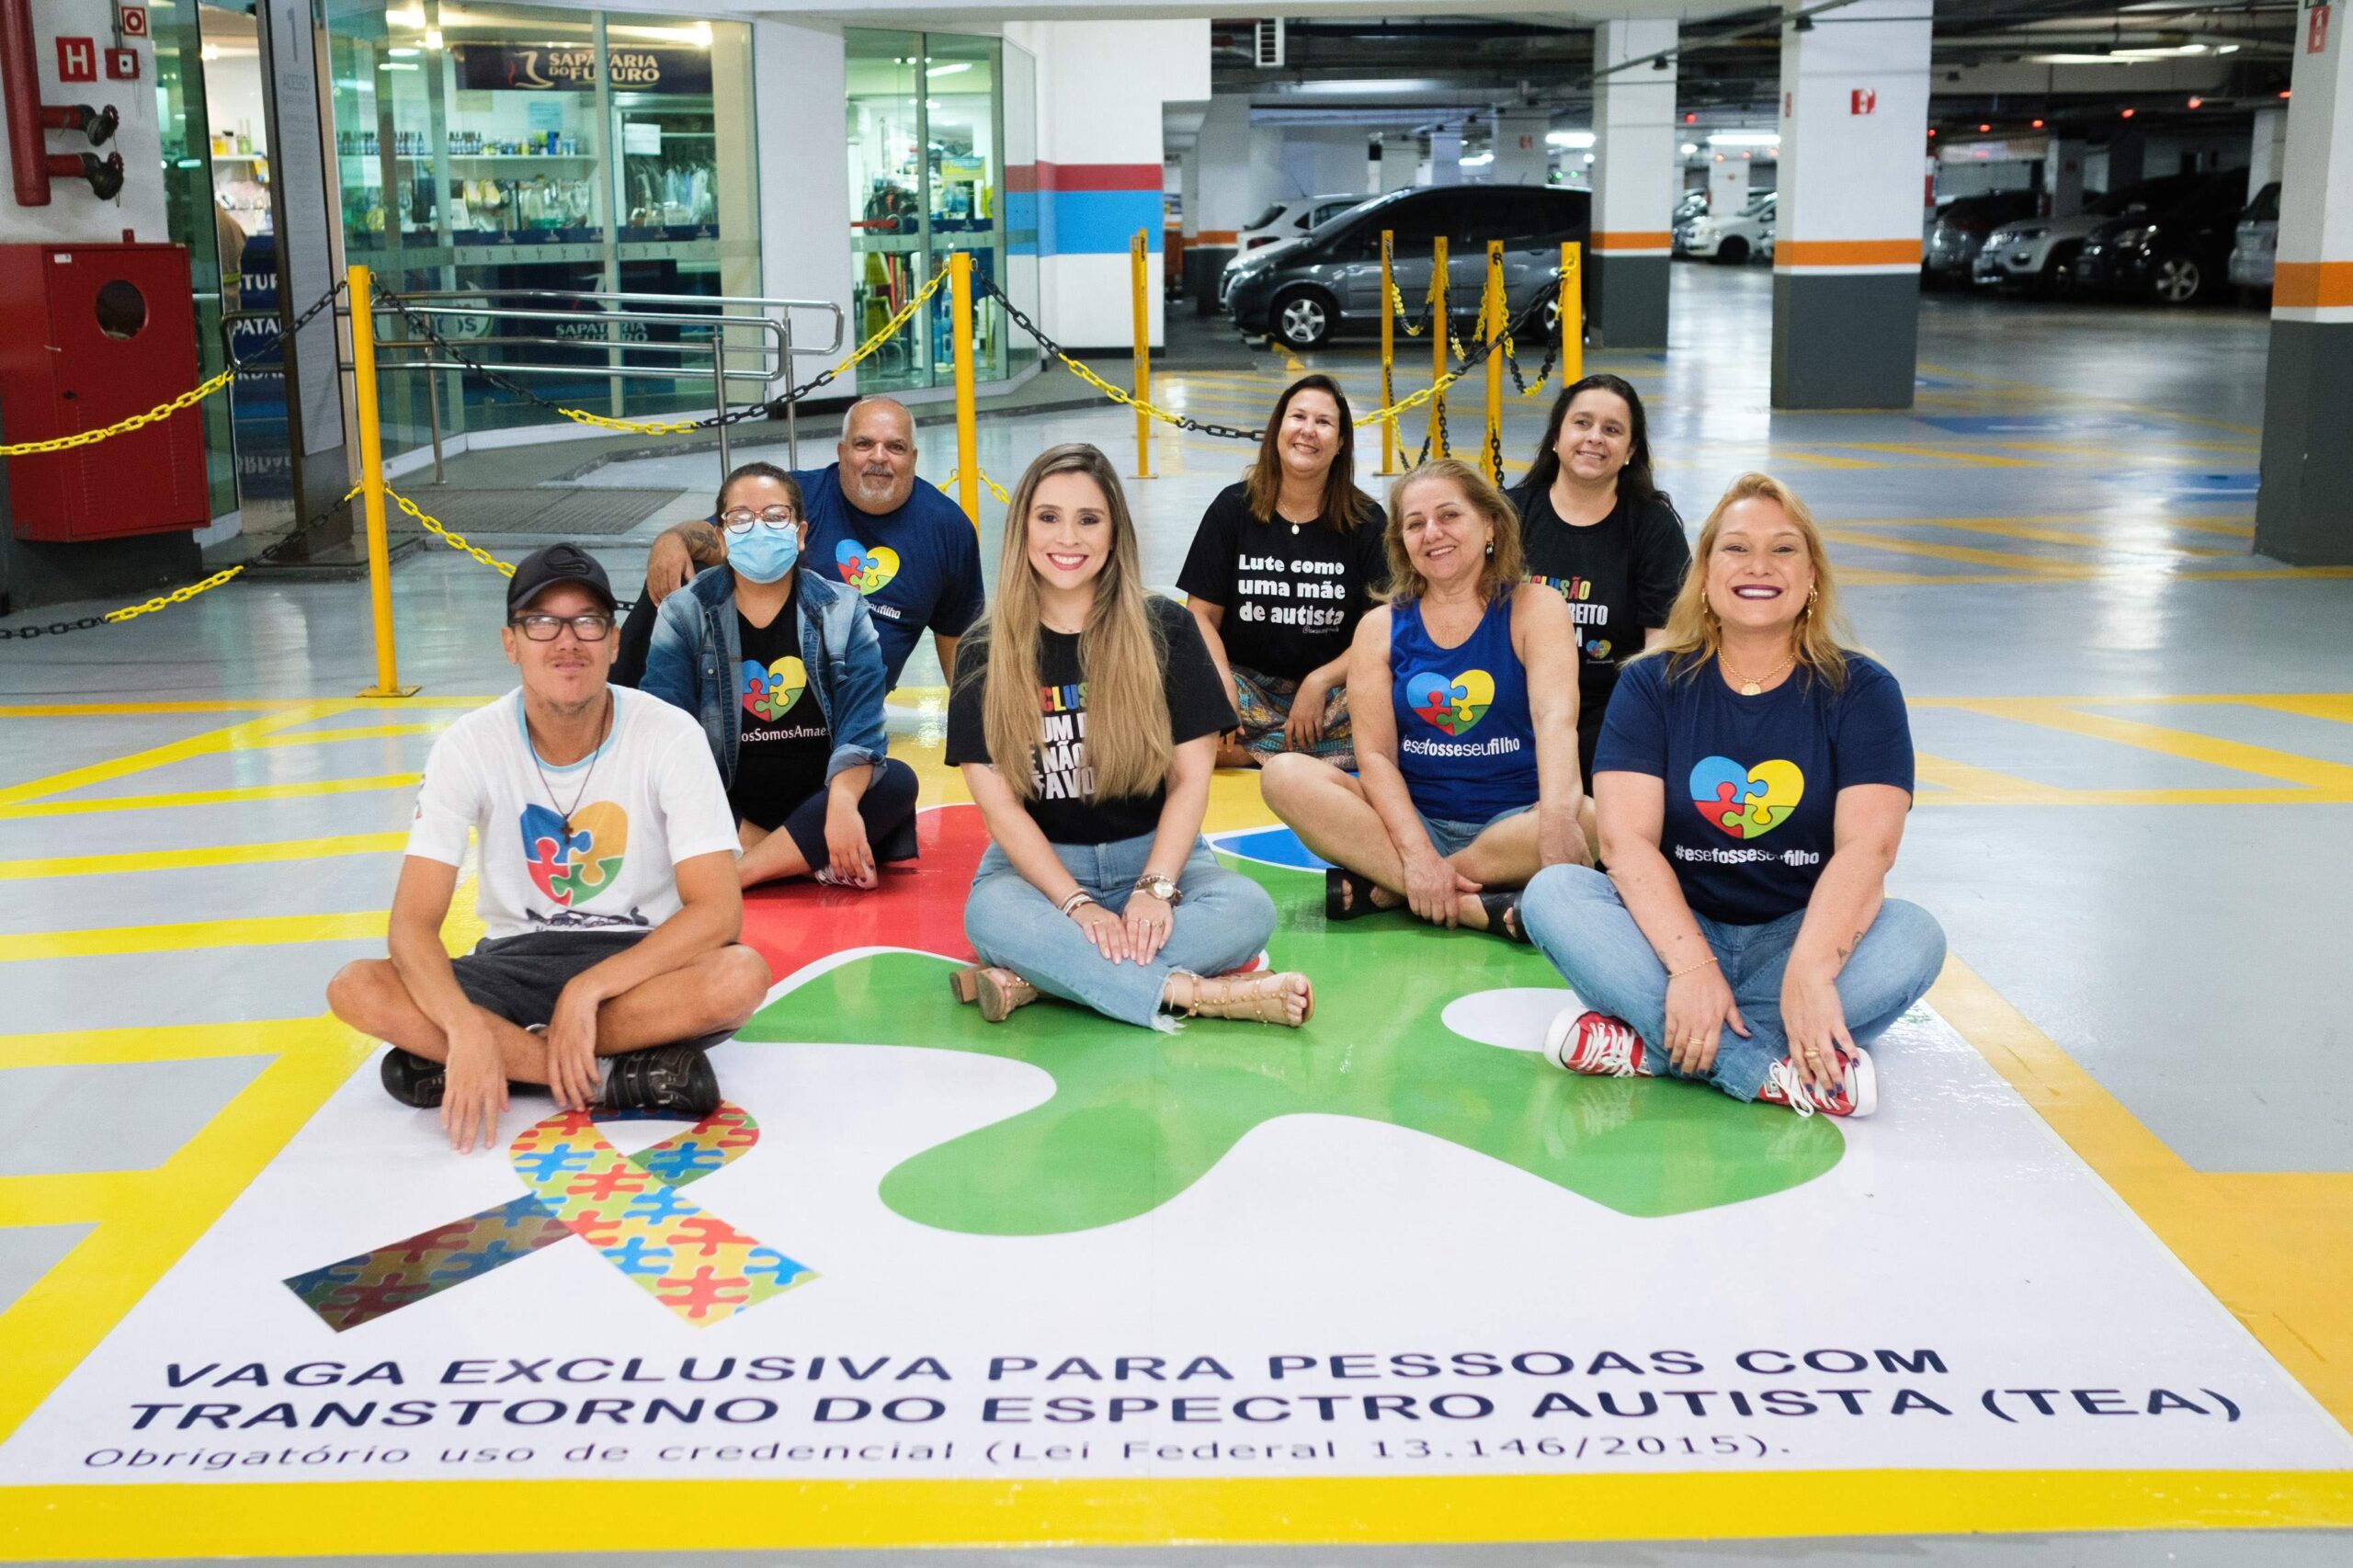 Shopping Vitória passa a ter vagas de estacionamento exclusivas para pessoas com Transtorno do Espectro Autista (TEA)